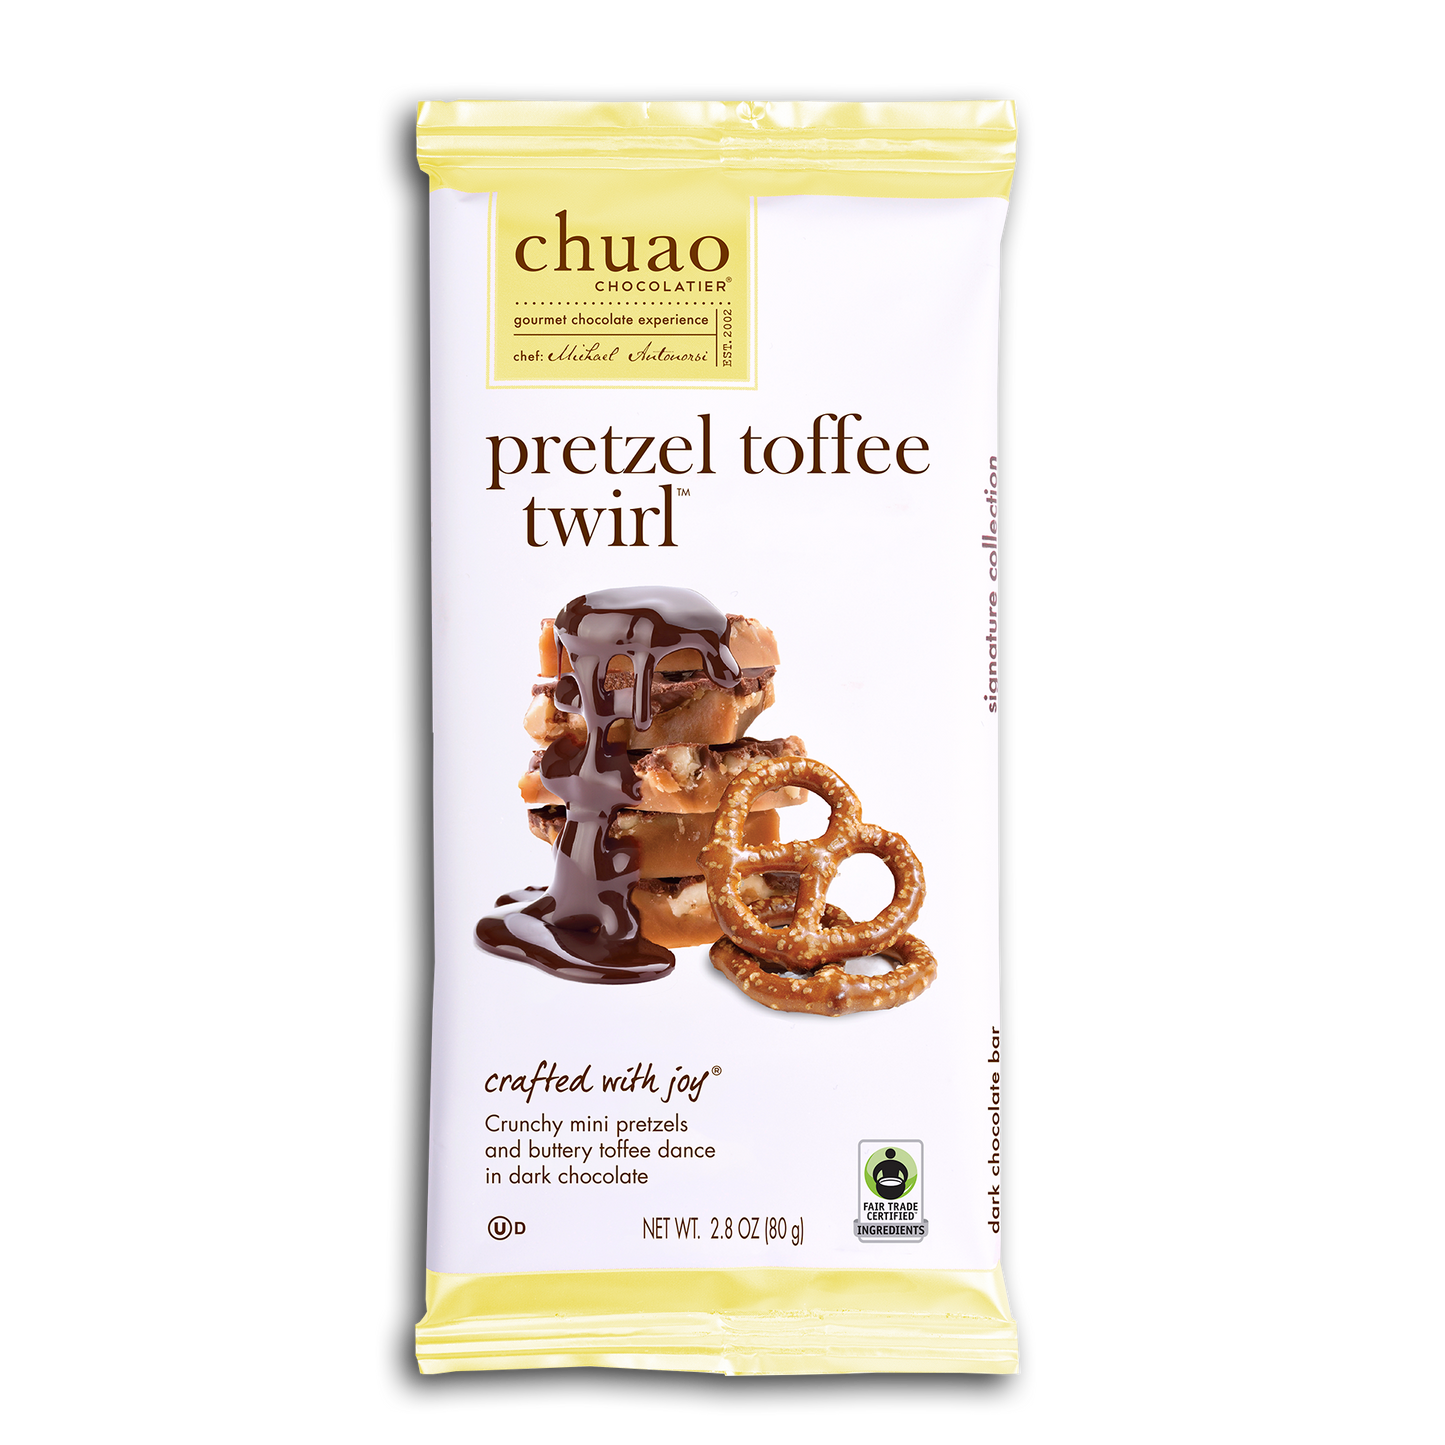 10PC CHUAO PRETZEL TOFFEE TWIRL BAR DISPLAY